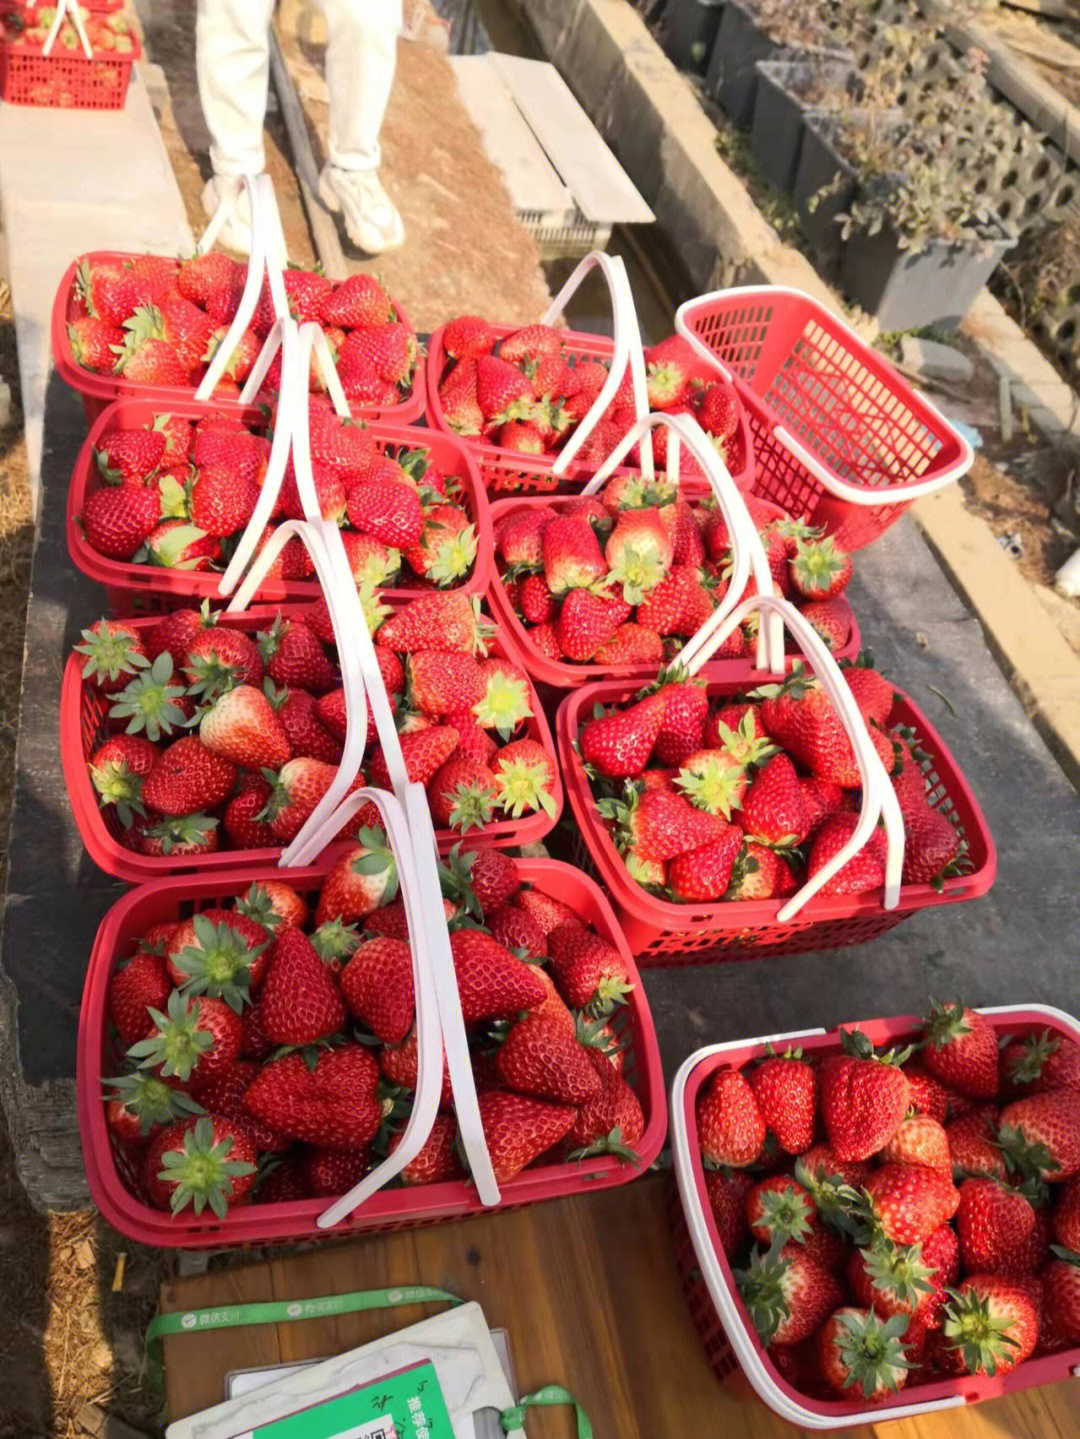 又大又红的草莓等着你来哟